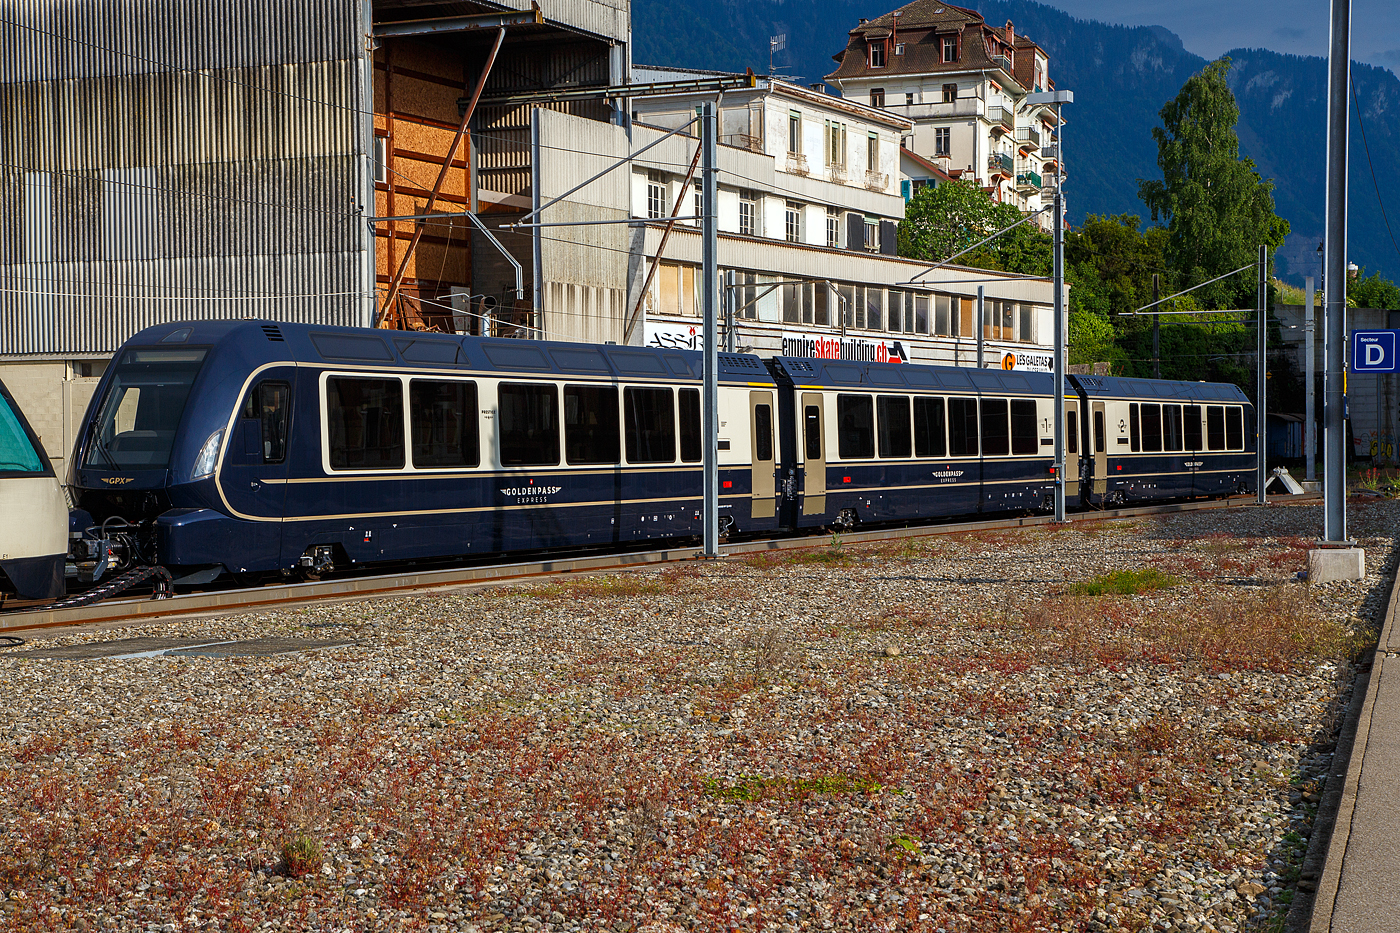 Drei MOB GPX - GoldenPass Express (Stadler GPX-Wagen mit variablem Drehgestell der Montreux-Berner Oberland-Bahn AG) abgestellt am 26. Mai 2023 beim Bahnhof Montreux. Die Wagen sind hier (von links nach rechts) der Premium-/1.Klasse Steuerwagen Ast 183 (96 85 8300 183-7 CH-MOB), der 1.Klasse Wagen As 193 (96 85 8300 193-4 CH-MOB) und der Premium-/2.Klasse Steuerwagen ABst 383 (96 85 8300 383-x CH-MOB).

Speziell am Zug ist auch dass er drei Reiseklassen hat. Wie in der Schweiz blich verfgt er eine 2. und 1. Klasse. Dazu kommt eine Premiumklasse mit verstellbaren und drehbaren Sitzen und groen Fenstern. Die Premiumklasse ist mit einer Reservierungsgebhr von 35 Franken und einem 1.-Klasse-Billet zugnglich. In der Premium- und der 1. Klasse werden die Reisenden direkt am Platz gastronomisch bedient. 

Ab dem 11.Dezember 2022 wurde mit diesen Wagen der GPX - GoldenPass Express dieser fuhr von Montreux ohne Umsteigen mit Umspuren in Zweisimmen durch bis Interlaken. Dafr wurde, im Zusammenhang mit dem Umbau des Bahnhofes Zweisimmen zwischen 2015 bis 2017, eine Umspuranlage gebaut. Ende Februar 2023 wurden erhhte Abnutzungen an den Herzstcken der Normalspur-Weichen auf der Strecke Zweisimmen–Interlaken Ost festgestellt. Bis zur Ermittlung der Ursache und erfolgreicher Nachbesserung verkehrt auf diesem Abschnitt ein Ersatzzug der BLS. Seit Sonntag, dem 11. Juni, fhrt der GoldenPass Express wieder einmal pro Tag ohne Unterbrechung von Montreux nach Interlaken und zurck. Gleichzeitig wurden am 11. Juni drei zustzliche Verbindungen zwischen Montreux und Interlaken eingefhrt. Fr diese Verbindungen wird der GoldenPass Express zunchst nur zwischen Montreux und Zweisimmen verkehren und diese Passagiere mssen in Zweisimmen umsteigen. Fr diese Zge werden die Direktverbindungen (Montreux - Interlaken) im Laufe des Monats Juli schrittweise hinzugefgt, vermutlich liegt dies noch an der Nachbesserung der Wagen.

Auf Meterspur wird der GPX mit einer Ge 4/4 8001–8004 befrdert. Als Ersatz hat die MOB im Jahr 2021 die Beschaffung neuer Lokomotiven ausgeschrieben. Bei der BLS sind die Re 465 fr die Traktion zustndig. Fr die BLS Re 465 wird ein sogenannter Interfacewagen Bsi 291–293 bentigt. Dessen Umspurfhigkeit ist nur zur berfhrung in die MOB-Werksttte Chernex notwendig, wo grere Unterhaltsarbeiten durchgefhrt werden. Auf der Lok (Re 465) zu gewanden Seite verfgen die Interfacewagen (Bsi 291 – 293) ber eine Schraubenkupplung mit zwei Puffern sowie einen Hilfsfhrerstand, auf der gegenberliegenden Seite ber eine Schwab-Kupplung wie die anderen GPX-Wagen. Zudem erfllen diese Wacewagen Aufgaben der Leittechnik, des Bremssystems und der Energieversorgung.

ANZAHL DER ZGE UND WAGEN (alle mit variablem Drehgestell) und TECHNISCHE DATEN:
Drei Zugkompositionen stellen den tglichen Fahrbetrieb sicher, eine Komposition ist in auf Reserve oder in Wartung.Die Flotte des GoldenPass Express umfasst 23 Wagen, die alle ber Panoramafenster verfgen und zwischen 18,75 und 19,32 m lang sind, es sind:
•	4 x Ast (181, 182, 183, 184), Prestige/1. Klasse Steuerwagen, Lnge 19.320 mm, Eigengewicht  27,0 t, Sitzpltze 9/20
•	4 x As (191, 192, 193, 194) , 1. Klasse Wagen, Lnge 18.750 mm, Eigengewicht  26,51 t, Sitzpltze 28
•	4 x Bs (271, 272, 273, 274), 2. Klasse Niederflur-Wagen, Lnge 18.750 mm, Eigengewicht  25,3 t, Sitzpltze 43
•	4 x Bs (281, 282, 283, 284), 2. Klasse Wagen, Lnge 19.320 mm, Eigengewicht  25,8 t, Sitzpltze 54
•	4 x ABst (381, 382, 383, 384) Prestige/2. Klasse Steuerwagen, Eigengewicht  27,01 t, Lnge 19.320 mm, Sitzpltze 9/25
•	3 x Bsi (291, 292, 293), 2. Klasse, interface Wagen (NUR auf BLS-Netz), Lnge 18.900 mm. Eigengewicht  25,11 t, Sitzpltze 9/25 

19 der 23 Wagen wurden zwischen September 2020 und Ende 2021 von Stadler Rail an die MOB geliefert. Die Niederflurwagen folgen im Laufe des Jahres 2023. Die MOB hat bei Alstom 58 Drehgestelle mit variabler Spurweite bestellt (d. h. zwei Drehgestelle pro Wagen und Reserve). Diese wurden ab Frhling 2022 schrittweise geliefert.

Die Wagen verfgen ber Gepckablagen und Skihalterungen. Die Niederflurwagen bieten Personen mit eingeschrnkter Mobilitt. Niederflurwagen sind mit BehiG-konformen WCs und Wickeltisch ausgestattet. Zur Einhaltung des Behindertengleichstellungsgesetzes muss der GPX ber mindestens einen Niederflurwagen verfgen. 

Eingesetzte Lokomotiven (alle ohne variables Drehgestell) sind:
•	MOB Ge 4/4 III Serie 8000, somit die Ge 4/4 III 8001, 8002 und 8004, diese sind 16.690 mm lang und haben ein Gewicht von 62 t.
•	BLS Re 465, diese sind 18.500 mm lang und haben ein Gewicht von 84 t. Sie verkehren immer mit einem zus. Interface-Wagen Bsi (291, 292, 293).

Die ZUSAMMENSETZUNG DER ZGE
Zwischen Montreux und Zweisimmen (von vorne nach hinten):
Lok MOB Ge 4/4 III Serie 8000 / ABst (Prestige/2. Klasse) / Bs (2. Klasse) / Bs (2. Klasse, Niederflur) / As (1. Klasse) / Ast (Prestige/1. Klasse).
Also fnf Wagen, gezogen von der MOB Ge 4/4 III der Serie 8000, Zuglnge1 20 m.

Zwischen Zweisimmen und Interlaken (von vorn nach hinten):
ABst (Prestige/2. Klasse) / Bs (2. Klasse) / Bs (2. Klasse, Niederflur) / As (1. Klasse) / Ast (Prestige/1. Klasse) /  Bsi (2. Klasse, interface) / BLS-Lok Re 465.
Also sechs Wagen, geschoben von der BLS-Lok, Zuglnge 140 m.

KAPAZITT DES ZUGES
Innerhalb des MOB Meterspurnetzes (Montreux – Zweisimmen) betrgt die maximale Kapazitt des Zuges 184 Pltze (18 in der Prestige-Klasse, 48 in der 1. Klasse und 118 in der 2. Klasse). Zurzeit bis zur Lieferung der Niederflurwagen Ende 2023/Anfang 2024 betrgt die Kapazitt des
GoldenPass Express 145 Pltze (z.Z. nur 79 in der 2. Klasse). Man hatte sich wohl mehr auf Zahlungskrftige Reisende fixiert.

Innerhalb des Normalspurnetzes (Zweisimmen – Interlaken) betrgt die maximale Kapazitt des Zuges 238 Pltze (18 in der Prestige-Klasse, 48 in der 1. Klasse und 172 in der 2. Klasse). Zurzeit bis zur Lieferung der Niederflurwagen 199 Pltze (nur 133 in der 2. Klasse). Der Unterschied zwischen den beiden Wagenzge ist darauf zurckzufhren, dass der
Interface-Wagen (2. Klasse) nur auf der BLS Normalspur fhrt. Der Interface-Wagen stellt die Kommunikation zwischen der Stammkomposition GPX und der BLS Lok Re 465 sicher.

Der GoldenPass Express (GPX) ist in mehrfacher Hinsicht ein auergewhnlicher Zug.

TECHNOLOGIE
Der Wechsel der Spurweite um +43 % (1.000 mm / 1.435 mm) und der Perronhhe (von 35 cm auf 55 cm) ist eine absolute Neuheit. Bei dem Umspuren findet auch eine Hhennderung um 200 mm der Wagen statt, zudem erfolgt ebenfalls eine Spannungsnderung von 900 V Gleichstrom auf 15 kV / 16,7 Hz Wechselstrom. Eine Weltpremiere!

Warum eine Weltpremiere, auch andere Unternehmen haben ihre Zge mit variablen Drehgestellen ausgerstet, etwa der spanische Talgo. Das von der MOB konzipierte und von Alstom weiterentwickelte Drehgestell ist jedoch das einzige mit einer so starken Verbreiterung (von 1 m auf 1,435 m, also um +43,5 %) und einer gleichzeitigen Anhebung des Wagenkastens um 200 mm, von 350 mm auf 550 mm. Kein anderes Drehgestell mit variabler Spurweite ist dazu in der Lage. Der Wechsel
von der Meterspur zur Normalspur ist daher eine echte Weltpremiere. Das Drehgestell des GoldenPass Express ndert die Spurweite innerhalb weniger Sekunden und mit den Fahrgsten an Bord. Insgesamt werden einschlielich des Lokomotivwechsels und der entsprechenden Kontrollen acht Minuten bentigt.

TOURISMUS
Durch einen Direktzug steigt die Attraktivitt von Montreux, Gstaad und Interlaken erheblich. Montreux rckt so nher an die Jungfrau und Luzern heran. Von den Palmen zu den Gletschern: Der Slogan wird Realitt. Der GoldenPass Express ist ein Bindeglied zwischen
den Sprachen, zwischen Westschweiz und Deutschschweiz, zwischen den Kulturen, zwischen Stadt und Gebirge, zwischen Seen und Bergen. Wobei mir persnlich das Umsteigen gar nicht so unangenehm ist.

REISEKOMFORT
Die dreistndige Fahrt von Montreux nach Interlaken bietet hchsten Komfort. Die Reisenden knnen in allen Wagen das Panorama genieen und zudem das gastronomische Angebot nutzen. Die Sitze in der Prestige-Klasse sind beheizt und ermglichen es, immer in Fahrtrichtung zu reisen.

BAHNLANDSCHAFT
Dieses Projekt berwindet die Barriere zwischen Meterspur und Normalspur. So, als wrde man die Grenze zwischen dem Land der Bergbahnen (Meterspur) und dem Land der Schnellzge (Normalspur) berschreiten. Dies erffnet vielversprechende Aussichten.

SCHWEIZER WIRTSCHAFT
Beim GoldenPass Express ist fast alles aus der Schweiz. Der Eckpfeiler des Systems, das Drehgestell mit variabler Spurweite, wurde in den MOB-Werksttten in Chernex entworfen. Anschlieend wurde es von Alstom Schweiz weiterentwickelt, wird im Alstom/Bombardier-
Werk in Villeneuve hergestellt und soll bei RailTech, ebenfalls in Villeneuve, gewartet werden. Die Wagen stammen aus den Stadler-Werksttten in Bussnang (Thurgau). Die 89 Millionen Franken wurden bzw. werden also weitgehend in die Schweizer Wirtschaft investiert. Die Instandhaltung des Zuges erfolgt durch die Abteilung Rollmaterial in den MOB-Zentren Montreux, Chernex und Zweisimmen.

Die Funktionsweise	
PRINZIP DES UMSPURENS
Der Wechsel von der Meterspur zur Normalspur erfolgt dank der Kombination aus variablem Drehgestell und Umspuranlage. Die grte Herausforderung besteht darin, sowohl die Spurweite als auch die Hhe zu ndern. Die elektrische Spannungsdifferenz bedingt einen Wechsel der Lokomotiven.

PHASEN
1. Von Montreux aus kommt der Zug am Bahnhof Zweisimmen auf der Meterspur an. Beim Befahren der Umspuranlage mit einer Geschwindigkeit von 15 km/h richten sich Klappen auf und sttzen den jeweiligen Wagen von unten. Vom Gewicht des Wagenkastens befreit,
verbreitert sich das Drehgestell von 1.000 mm auf 1.435 mm. Gleichzeitig hebt sich der Wagenkasten von den 350 mm eines Meterspurperrons auf die 550 mm eines Normalspurperrons.

2. Die nderung von Spurweite und Hhe ist jedoch nicht die einzige Hrde. Zwischen dem MOB- und dem BLS-Netz besteht nmlich eine elektrische Spannungsdifferenz von 900 Volt (Gleichstrom) auf dem Meterspurnetz der MOB und 15 kV / 16,7 Hz (Wechselstrom) auf dem Normalspurnetz der BLS. Dies erfordert einen Wechsel der Lokomotiven. Sie besitzen keine variablen Drehgestelle. So bergibt in Zweisimmen die MOB-Lok die Wagenkolonne an die BLS-Lok.

3. Die Wagenkolonne kann dann auf der Normalspur nach Interlaken Ost weiterfahren. Das Umspuren dauert acht Minuten, einige Sekunden fr das Befahren der Umspuranlage, die Restzeit fr den Lokomotivwechsel und die notwendigen Kontrollen. In Zweisimmen befinden sich die Umspuranlagen an den Gleisen 6 und 7.

FAHRKARTEN PREISE
2023 betrgt der Preis (Erwachsenen-Volltarif, Einzelfahrt) fr die Strecke Montreux –Interlaken 73 Franken (davon  20 Franken Reservierungsgebhr) in der 2. Klasse und 113 Franken (davon  20 Franken Reservierungsgebhr) in der 1. Klasse. Eine Reservierung wird fr die 1. und 2. Klasse dringend empfohlen und ist bei der Prestige-
Klasse (35 Franken) obligatorisch.

Da der GoldenPass Express auch den regionalen Personenverkehr (RPV) sicherstellt, werden die Fahrausweise des Schweizer Sortiments wie Generalabonnements, Halbtax und Tageskarten anerkannt und akzeptiert.

BETRIEBSWEISE
Der GPX wird nach dem Grundsatz des Linienmanagements betrieben. Das heit, die MOB betreibt den Zug innerhalb ihres Netzes und die BLS tut dasselbe zwischen Zweisimmen und Interlaken. 

WARUM einen Wagen mehr auf dem BLS-Netz?
Dies ist dem Lokomotivwechsel in Zweisimmen geschuldet. Hierfr gibt es zwei Grnde:
1. Die elektrische Spannung des MOB-Netzes entspricht nicht der Spannung des BLS-Netzes.
2. Die Loks besitzen kein Drehgestell mit variabler Spurweite.
Die Kupplungen und Puffer des Rollmaterials des GoldenPass Express sind jedoch mit denen der BLS-Lok nicht identisch. Um die beiden Fahrzeuge miteinander zu verbinden, braucht man daher einen zustzlichen Wagen, den Interfacewagen (Bsi). Aus diesem Grund gibt es auf der Strecke Zweisimmen – Interlaken – Zweisimmen einen Wagen mehr.

Quelle: gpx.swiss (MOB – Goldenpass)
